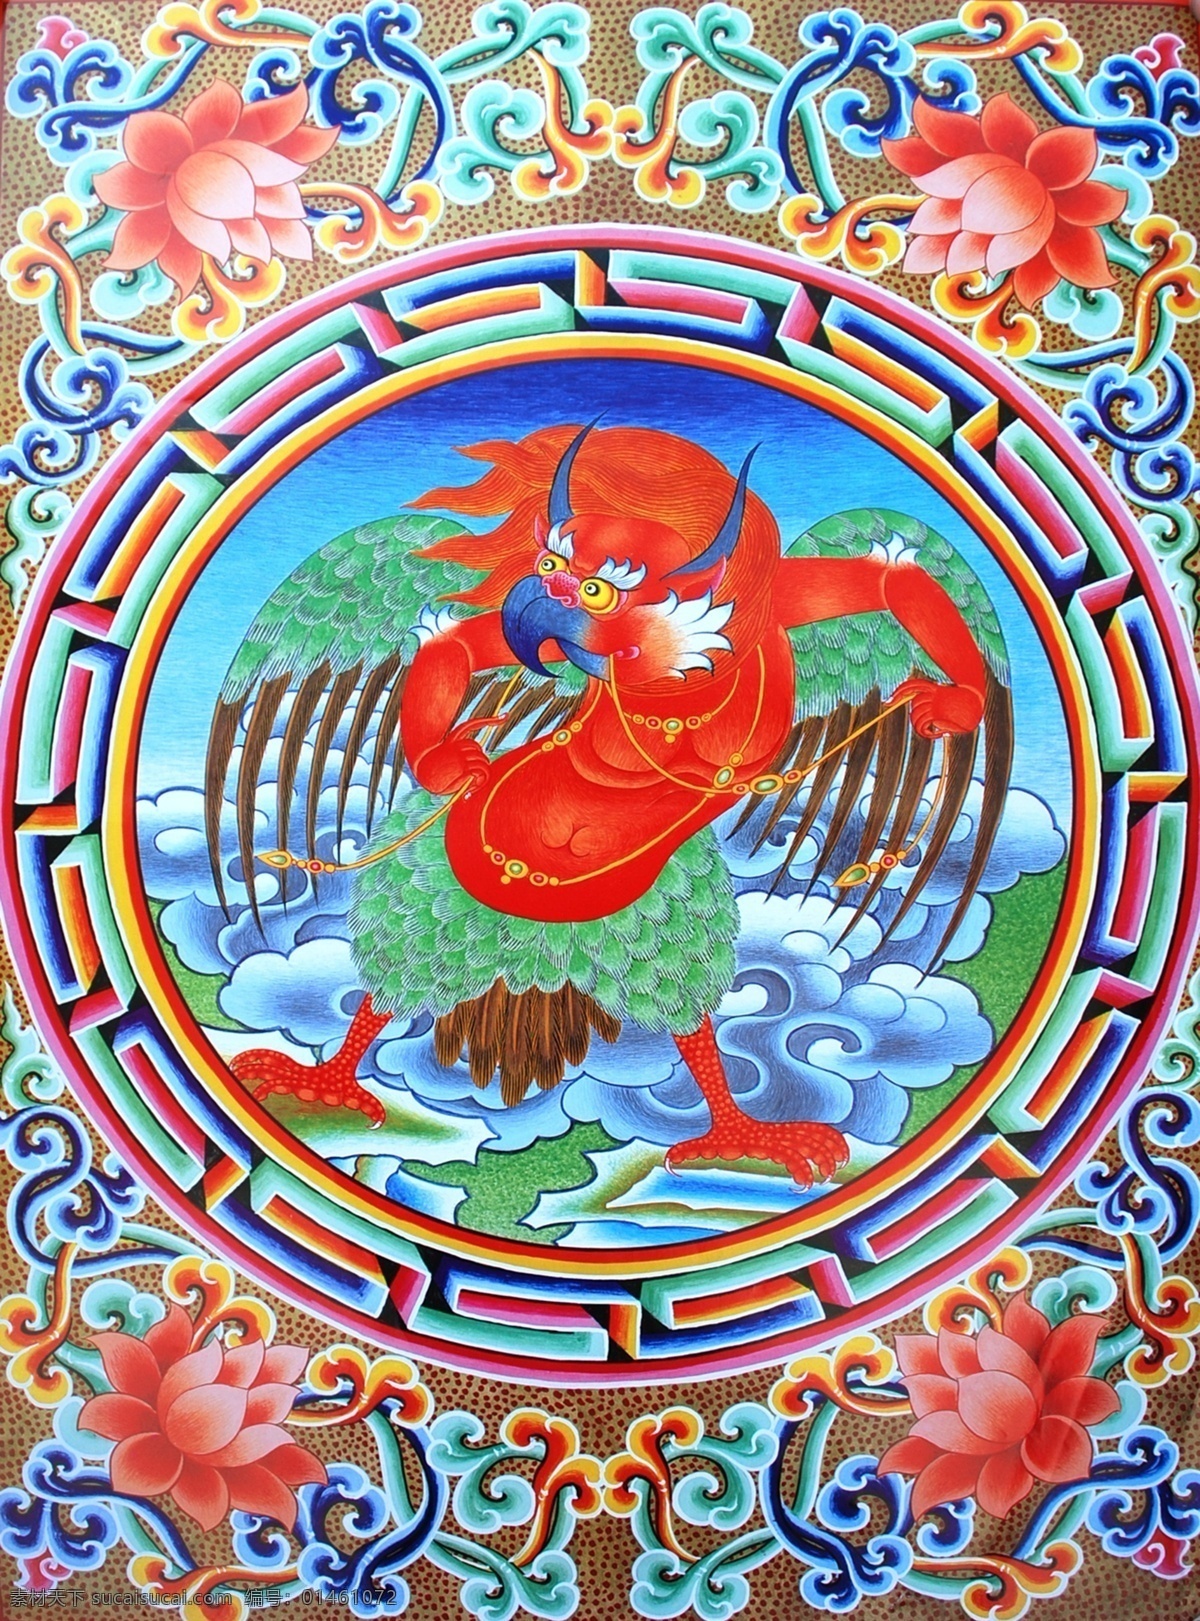 无框画 佛教 手绘 墙画 壁画 卧室画 绘画 吉祥 图案 藏族 宗教 和平 平安 宗教设计 藏族传统图案 大鹏鸟 绘画书法 文化艺术